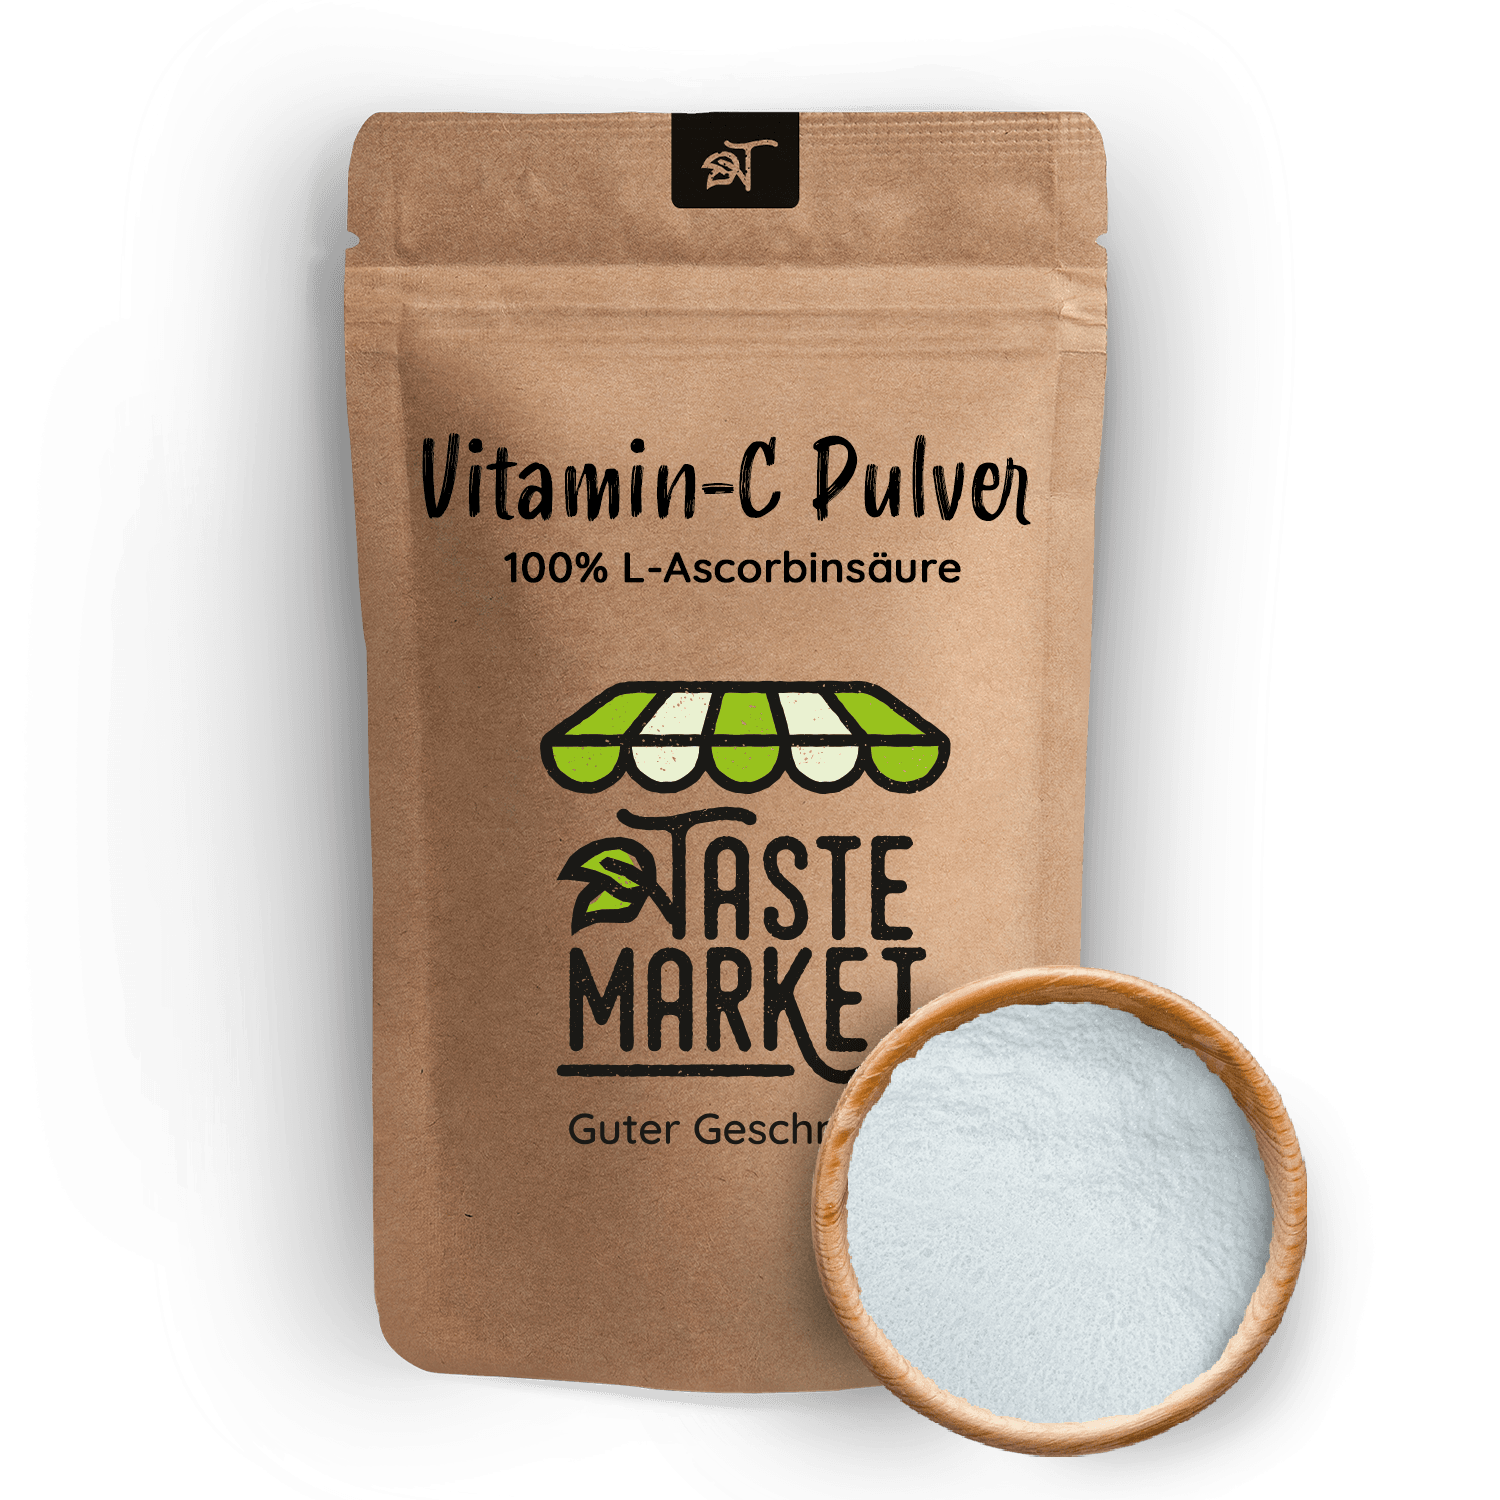 Vitamin c pulver 1 kg - Unsere Auswahl unter der Menge an verglichenenVitamin c pulver 1 kg!